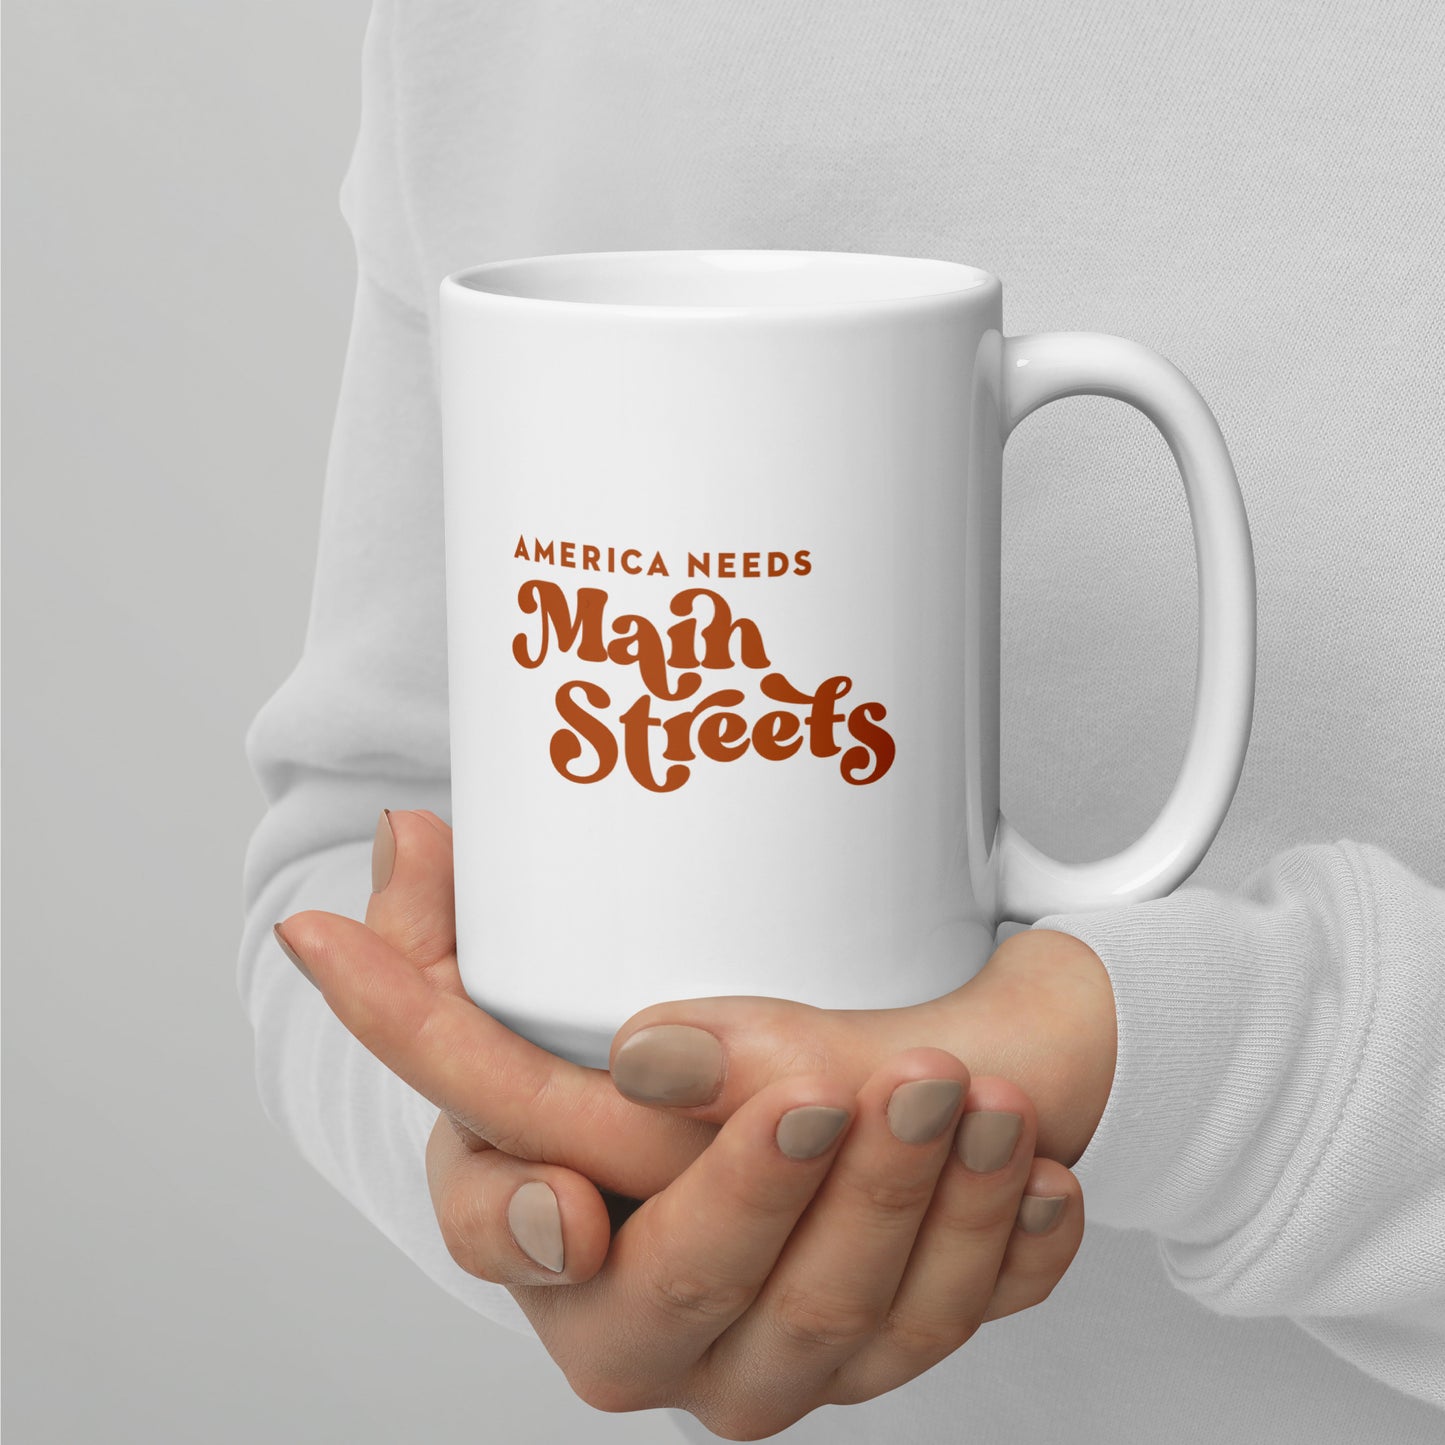 "America Needs Main Streets" Orange & White Glossy Mug